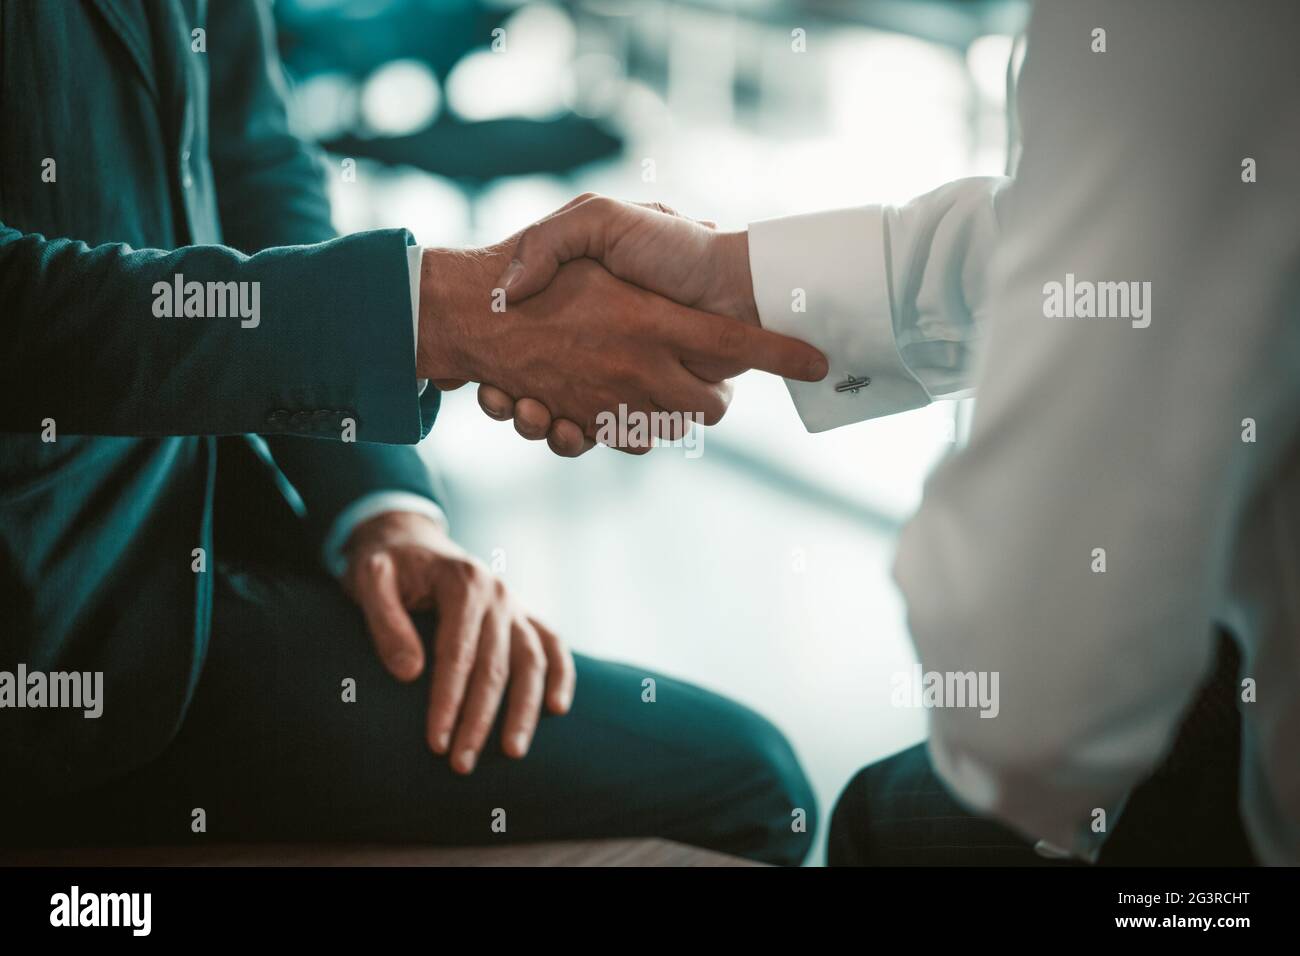 Les employés se secouent la main lors d'une réunion d'affaires. Conclure un accord entre les partenaires. Deux hommes en costume. Photo de haute qualité Banque D'Images